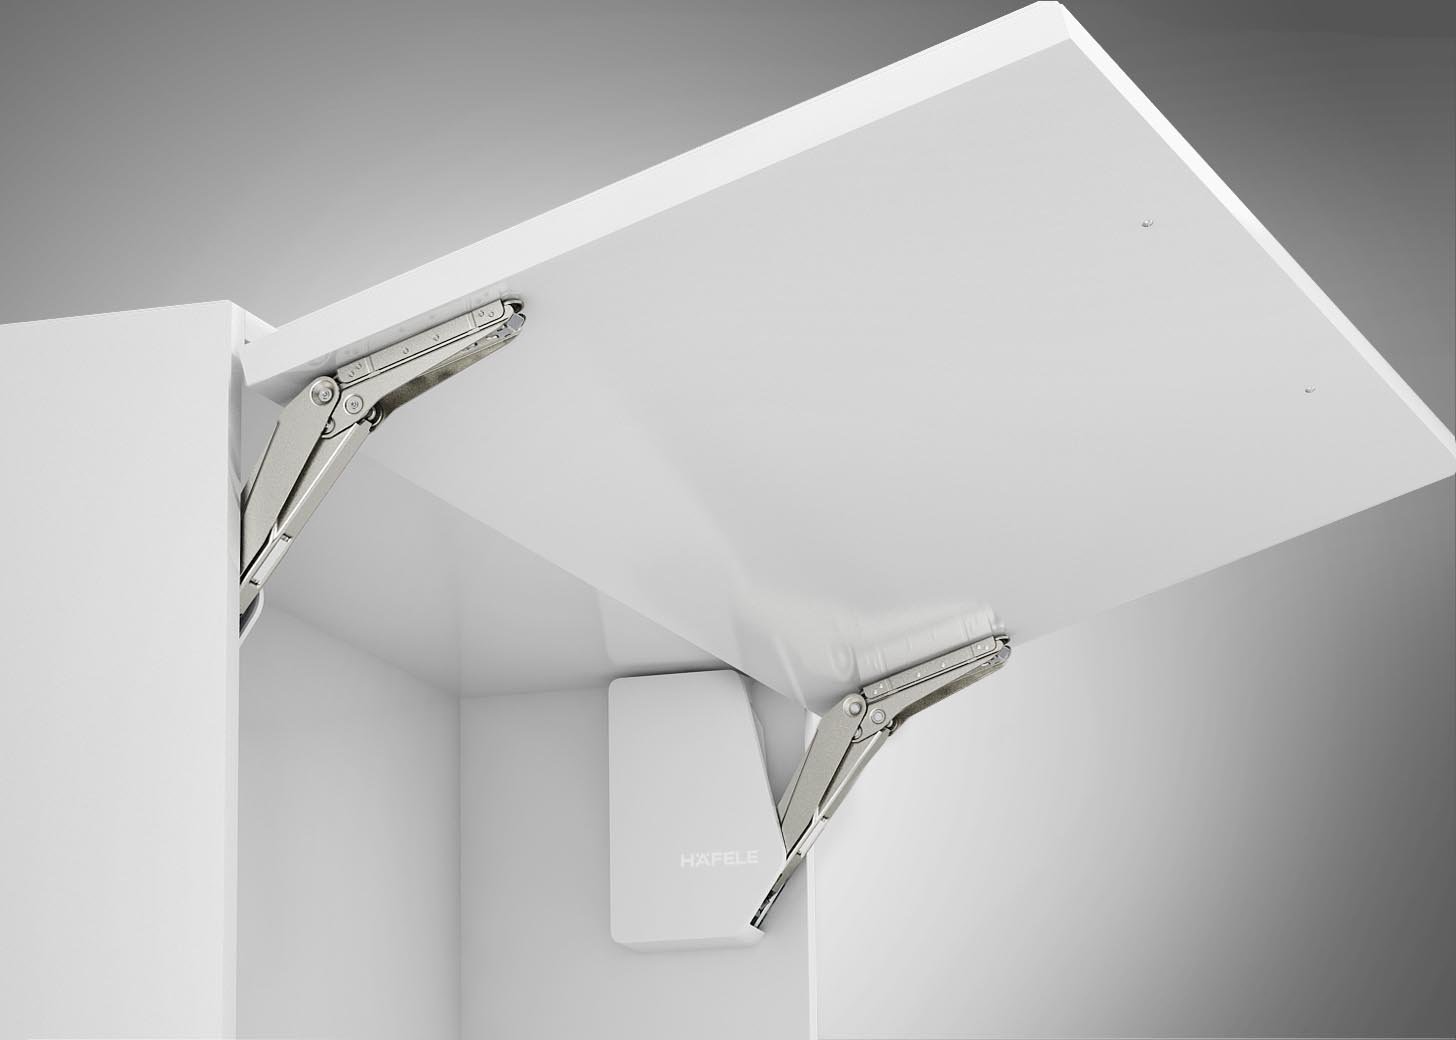 Gedotec Klappenbeschlag Küche Klappenhalter Möbel Hochklappbeschlag FREE FLAP 3.15 für einteilige Klappen aus Holz | Modell G: 6,9-27,3 kg | 1 Komplett-Set - Klappen-Beschläge weiß für Schränke